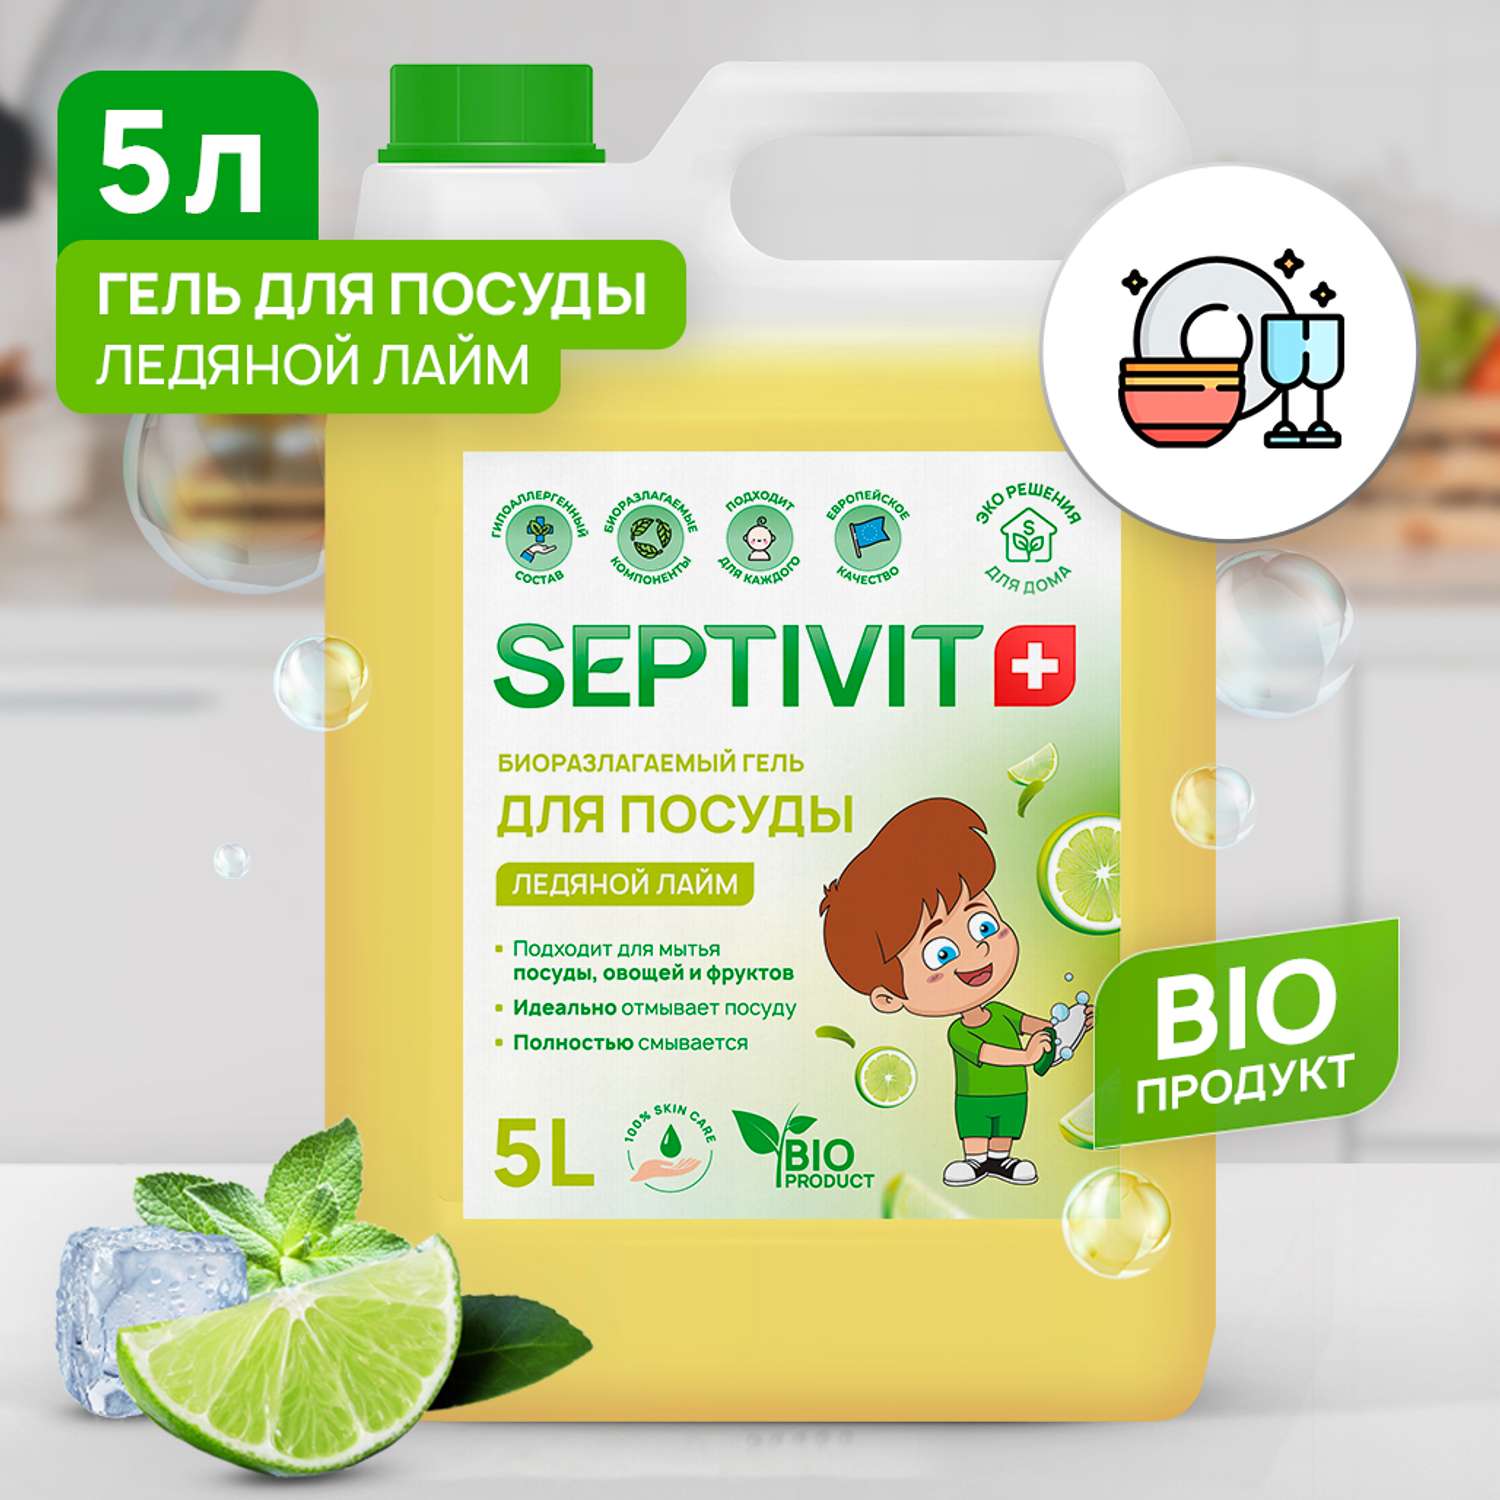 Средство для мытья посуды SEPTIVIT Premium Ледяной лайм 5л  по .